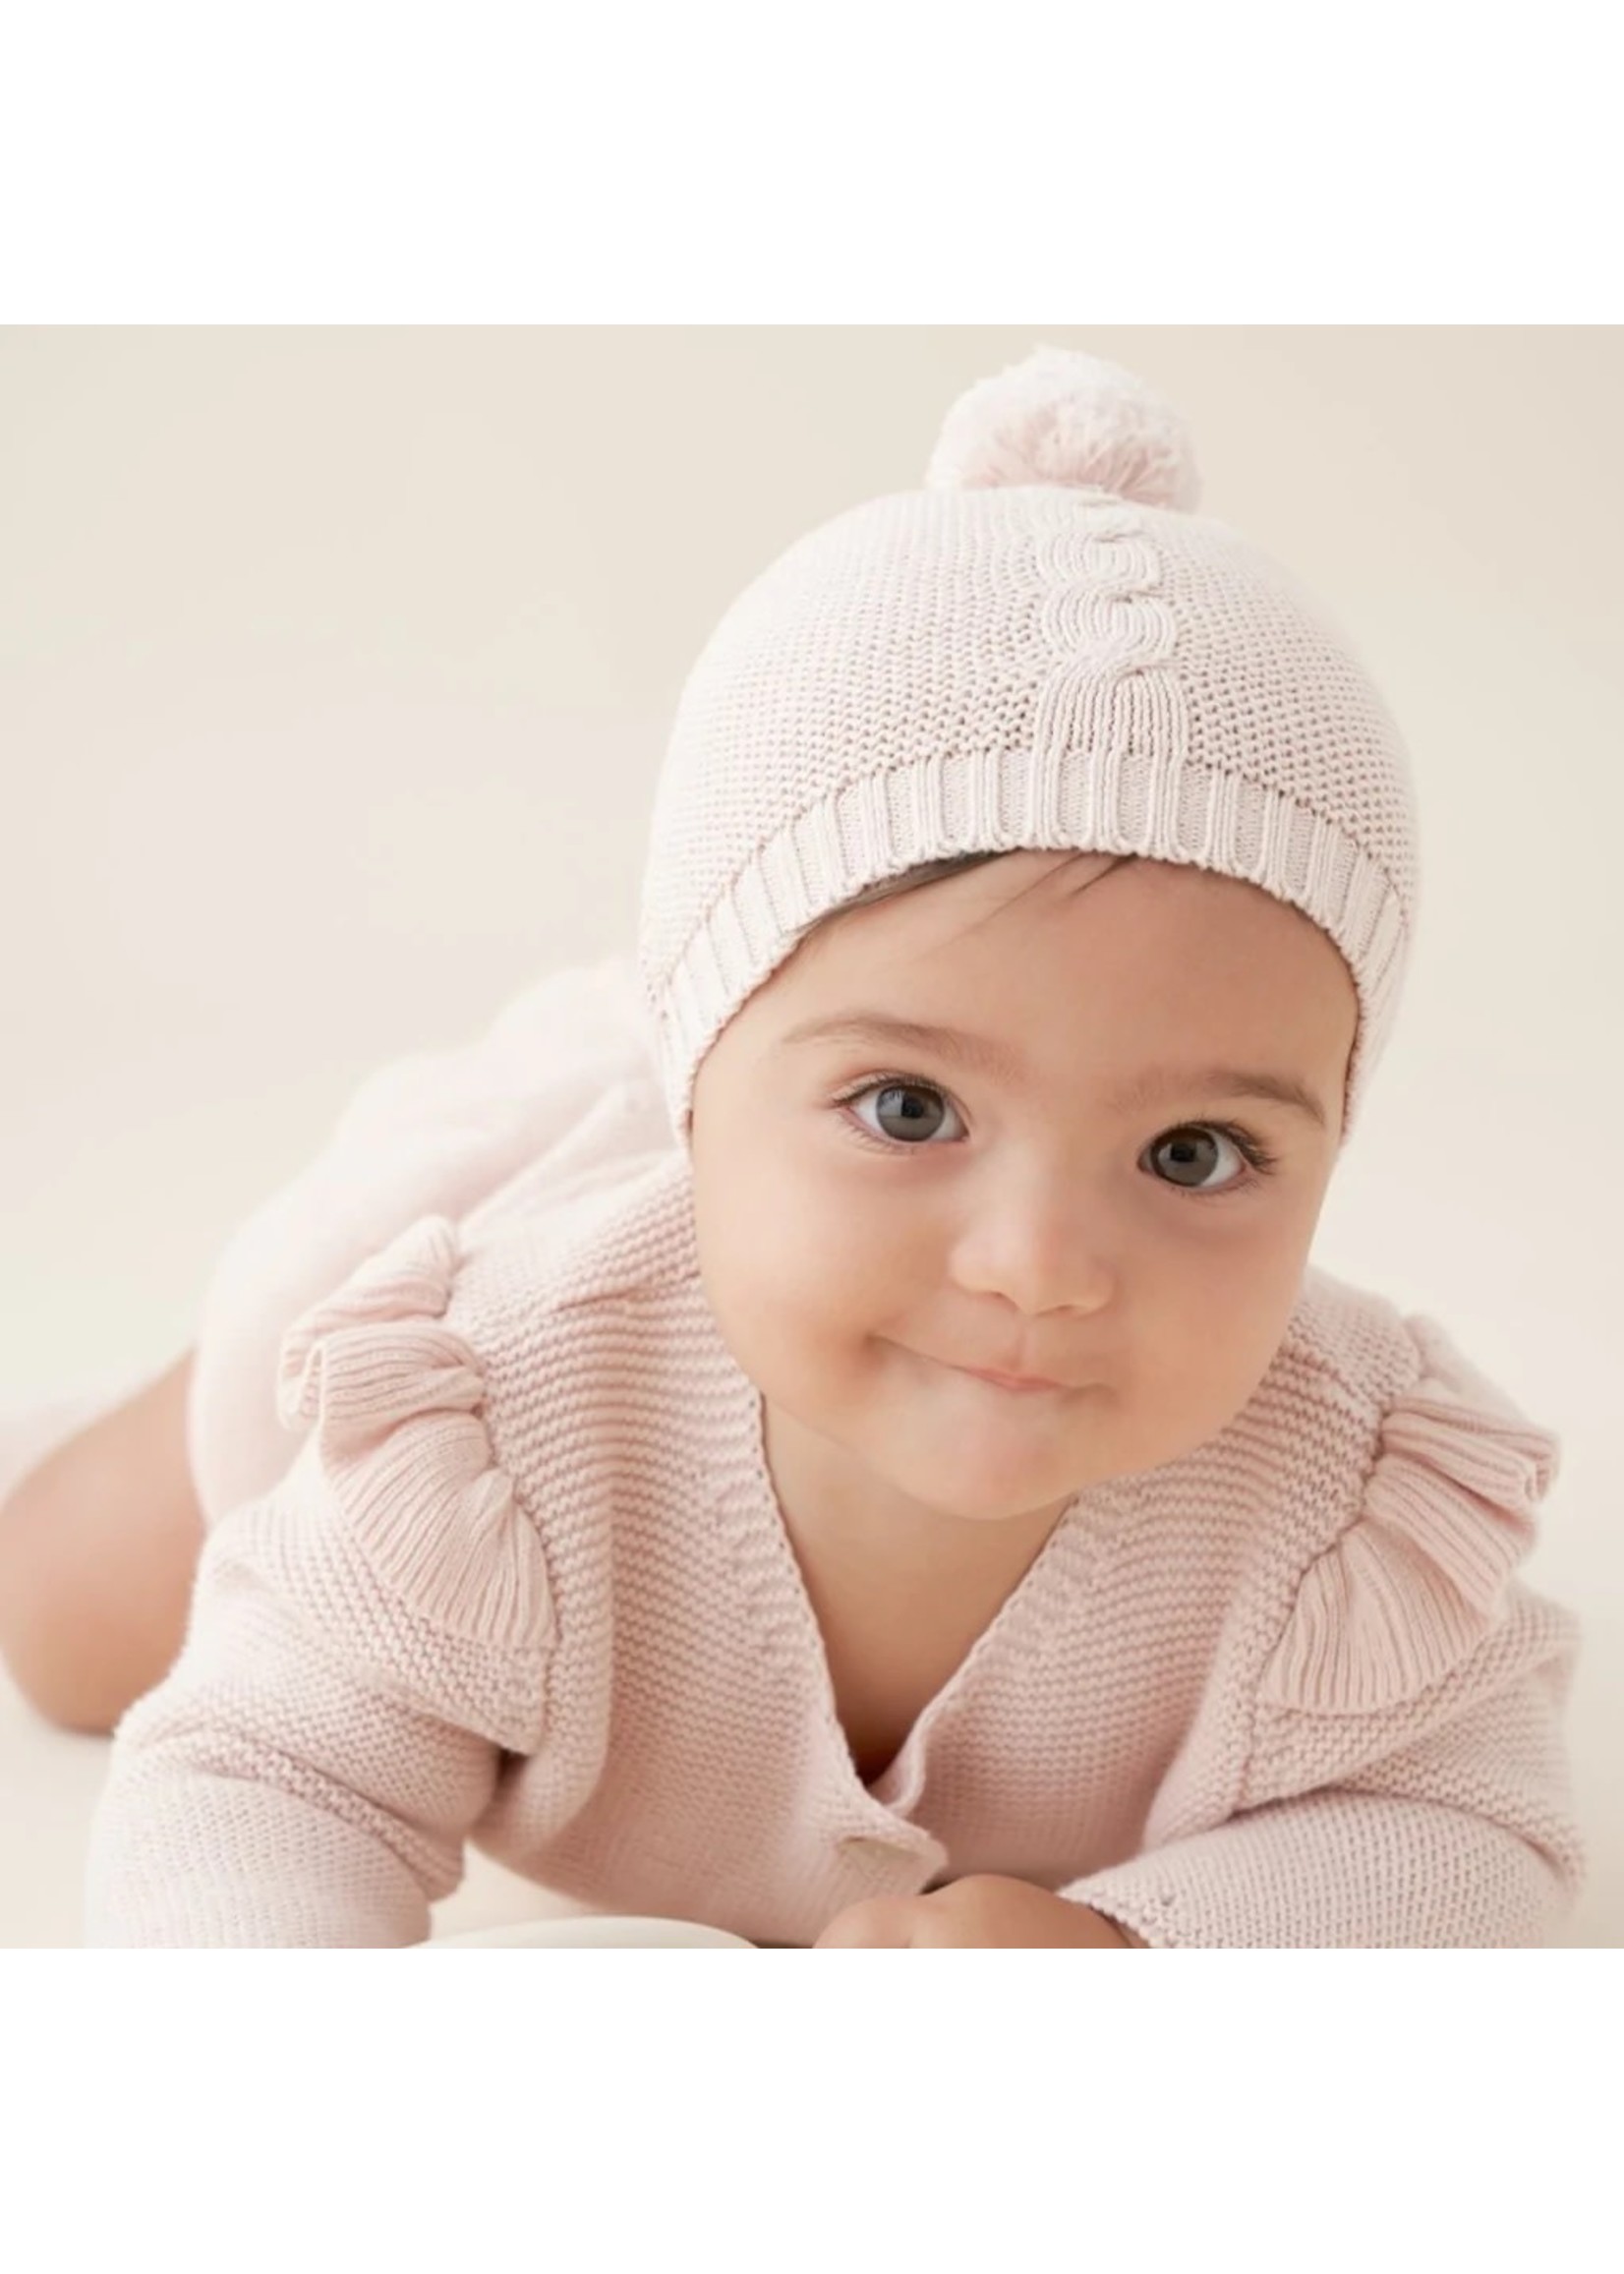 Garter Knit Baby Hat Pom Pom Blush 0-12M